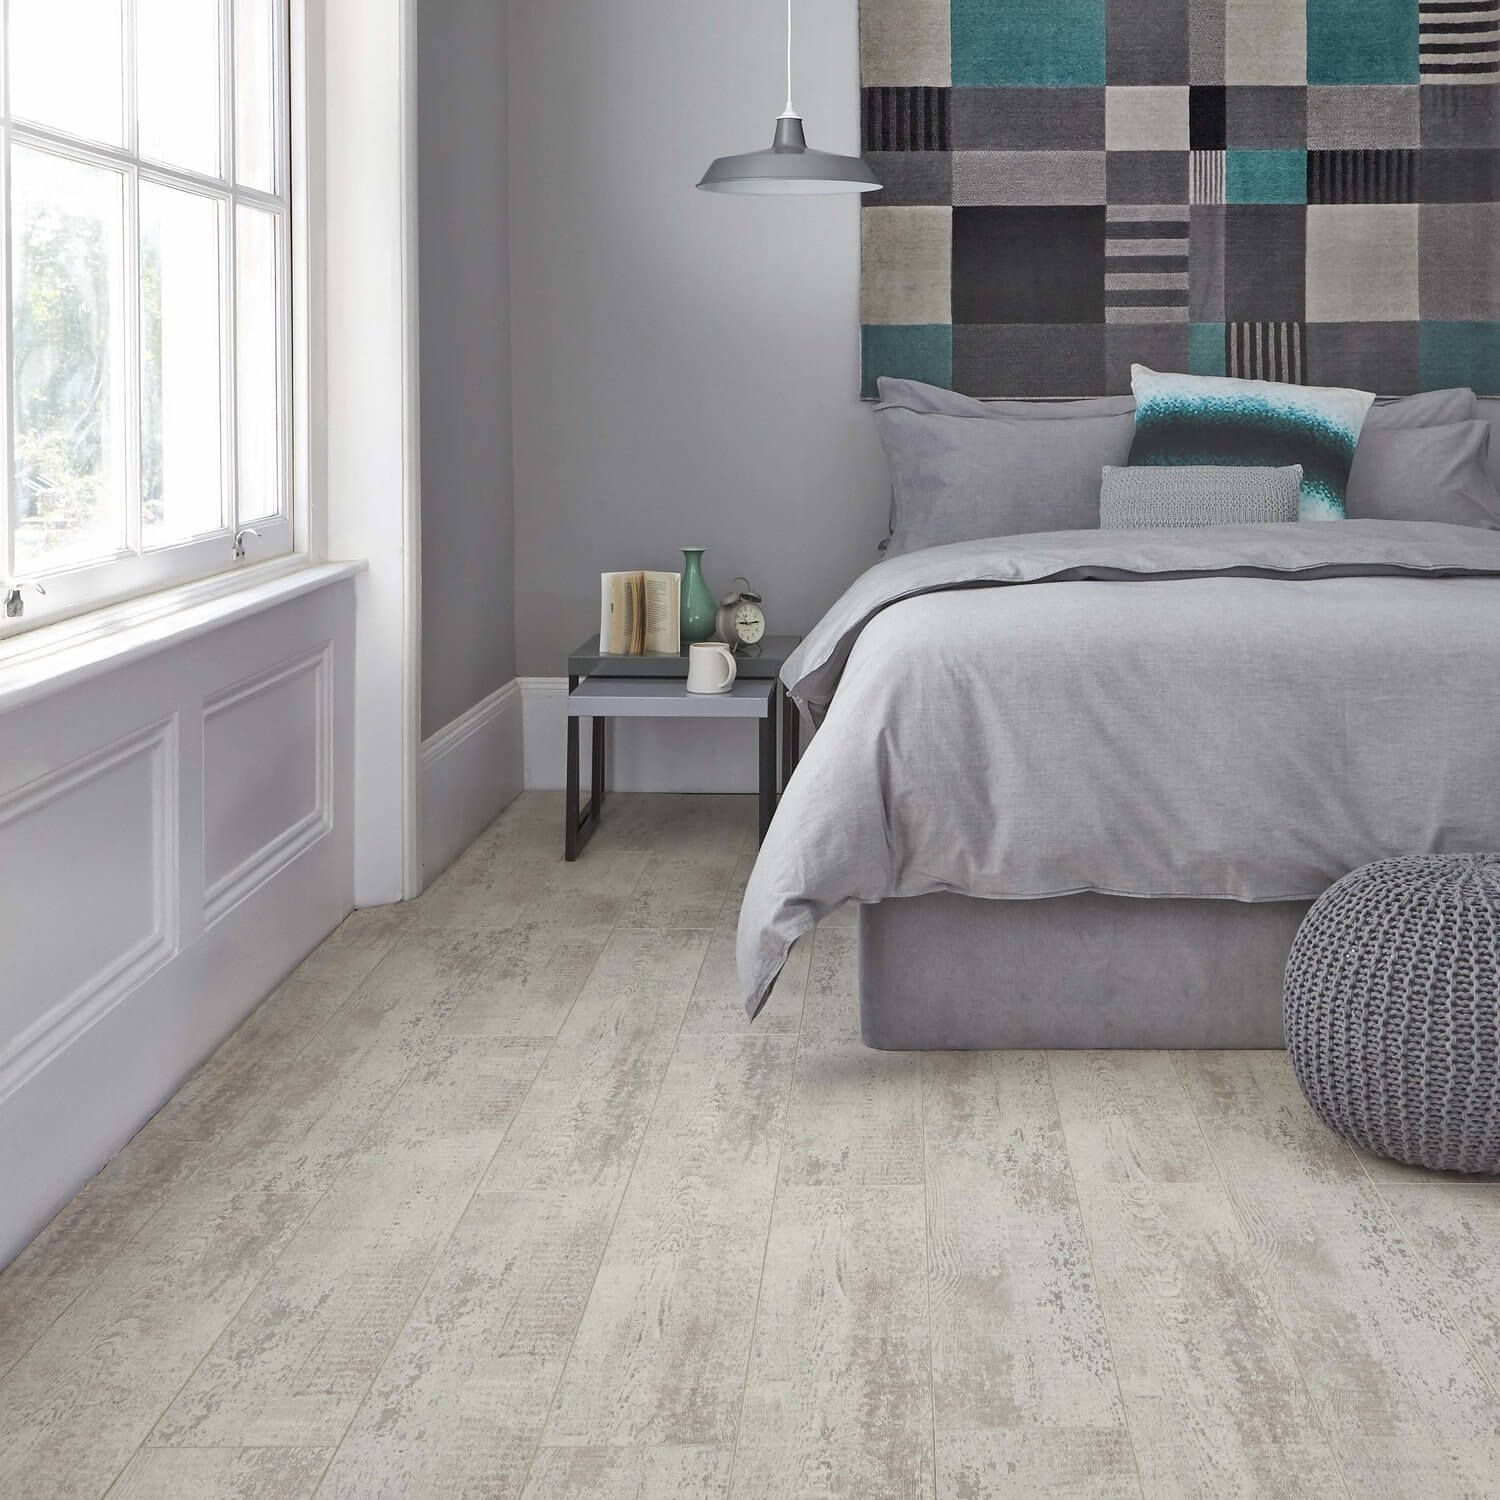  Gray Floor Bedroom Ideas with Best Design